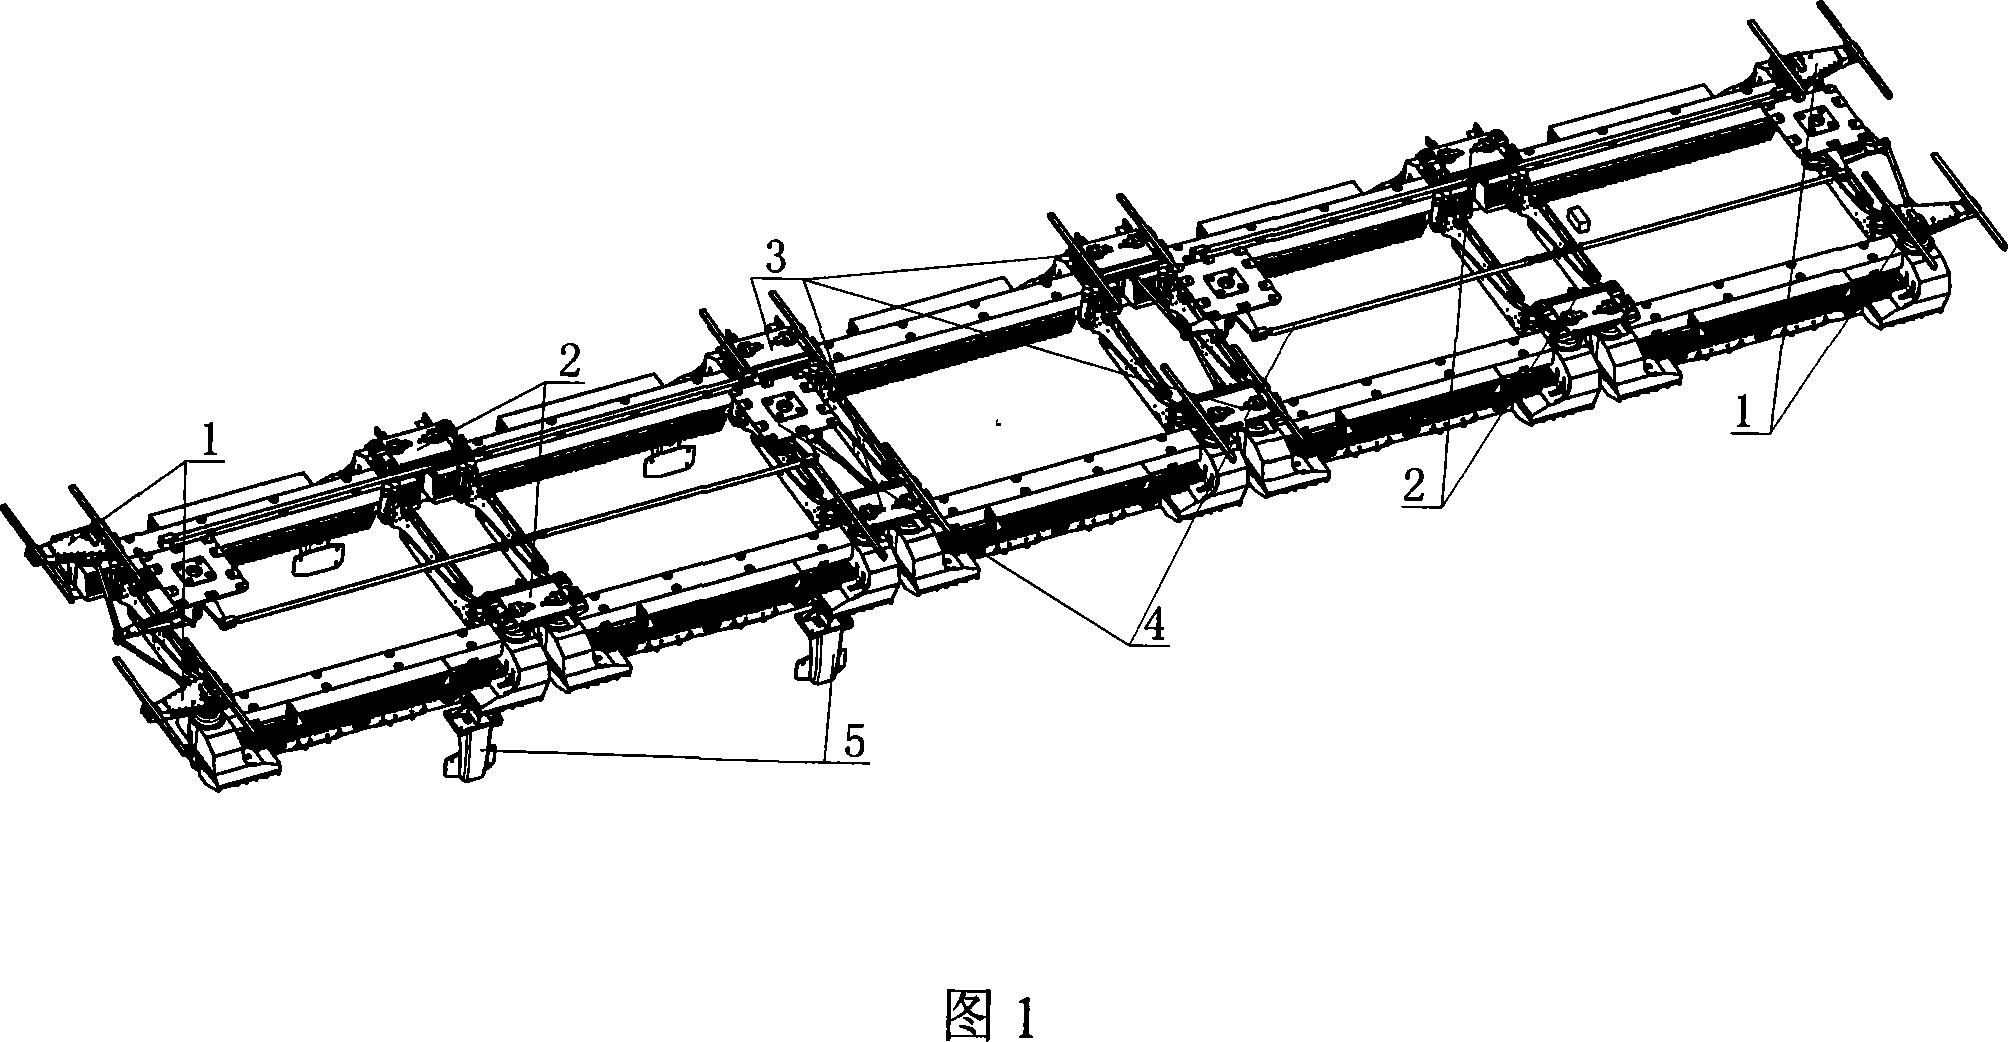 F rail vehicle running mechanism